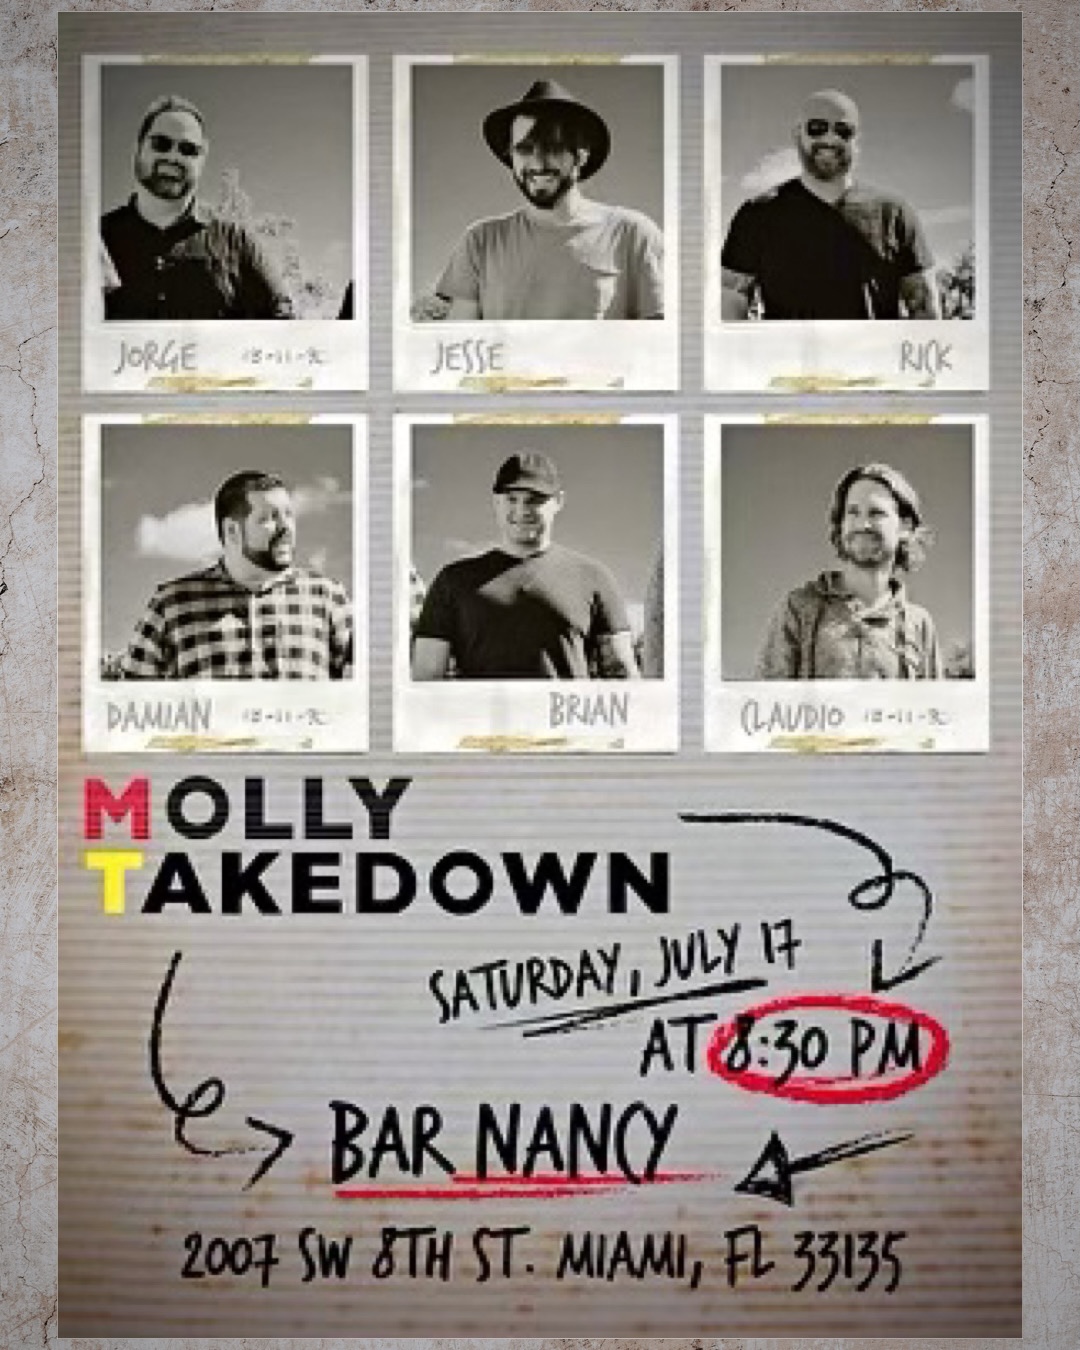 Molly Takedown at Bar Nancy Sat. July 17 at 8:30PM